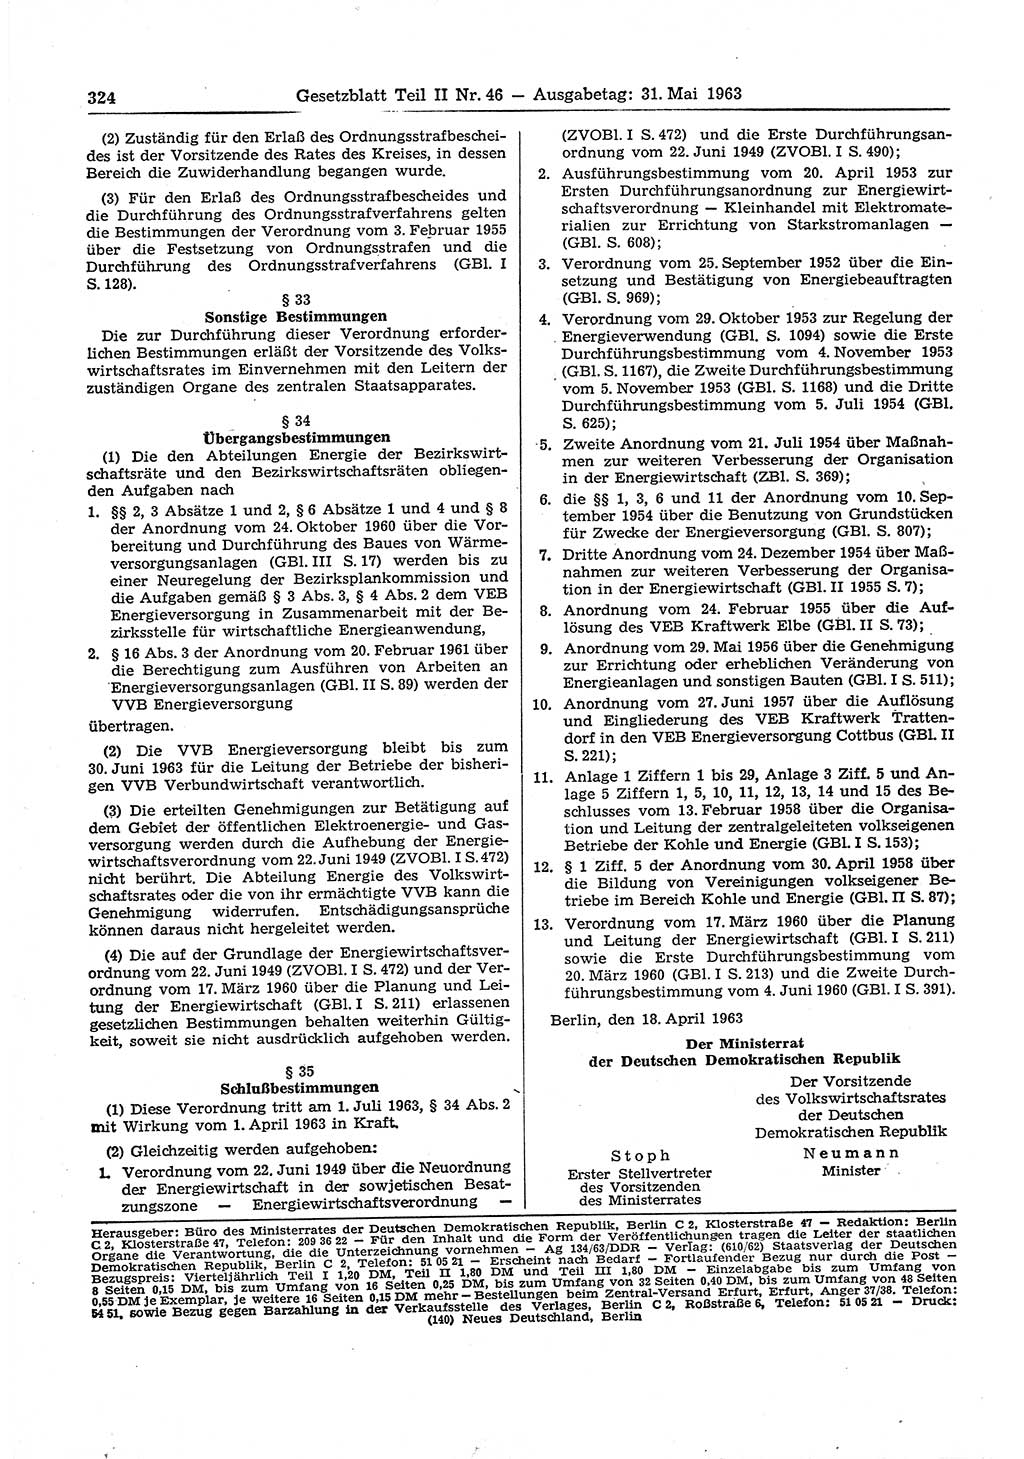 Gesetzblatt (GBl.) der Deutschen Demokratischen Republik (DDR) Teil ⅠⅠ 1963, Seite 324 (GBl. DDR ⅠⅠ 1963, S. 324)